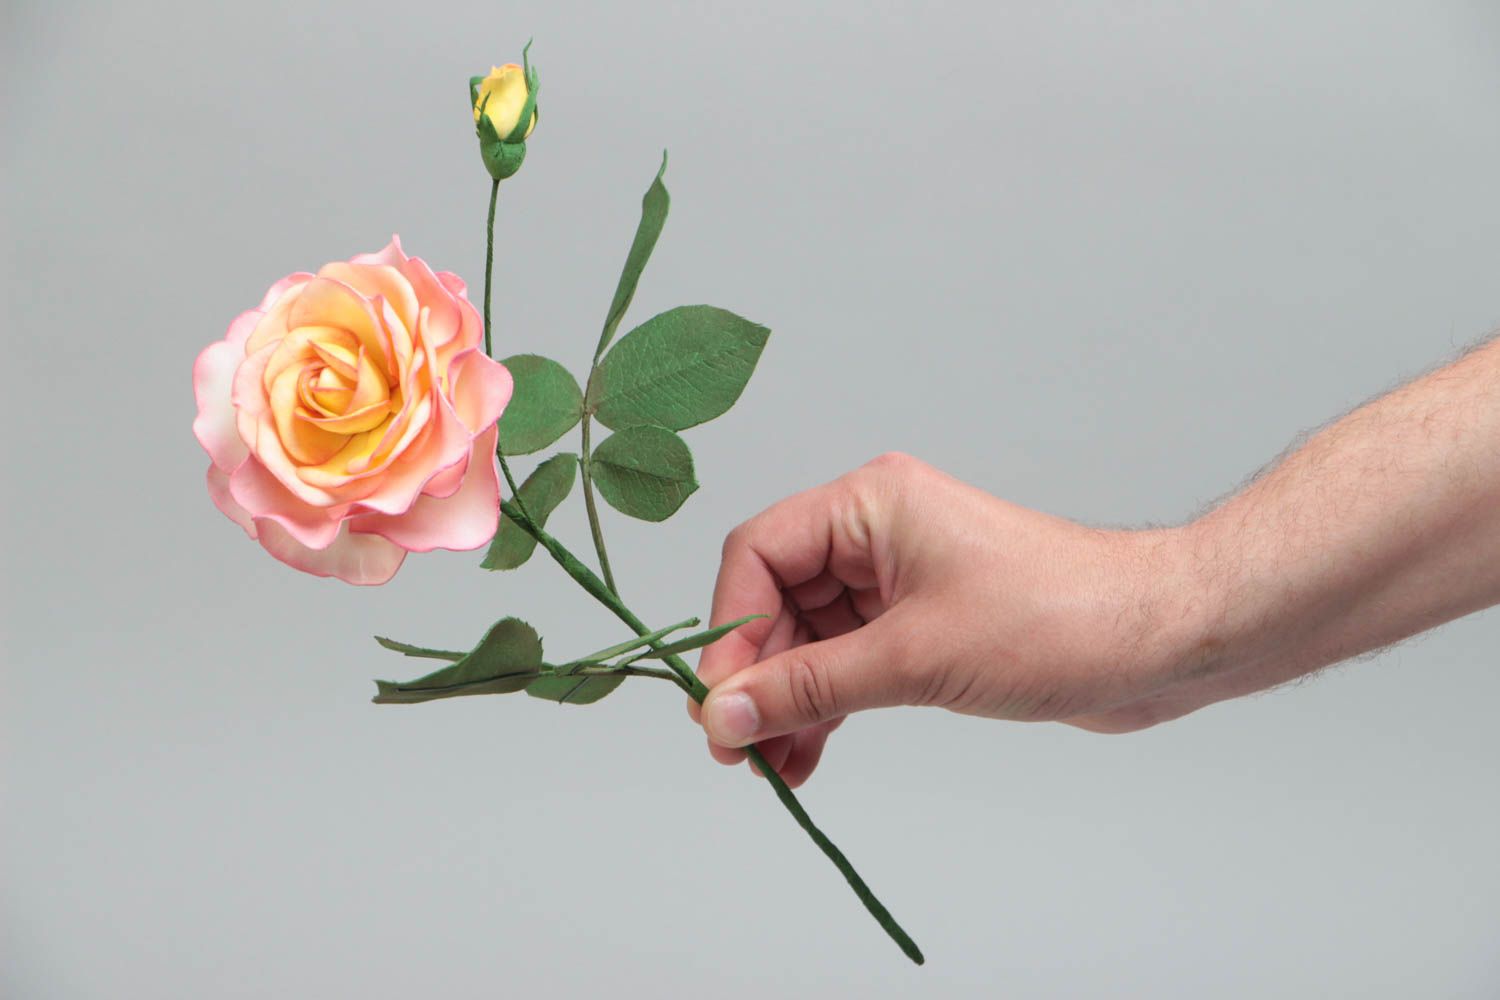 Розовая роза из фоамирана красивый цветок для декора дома ручной работы фото 5